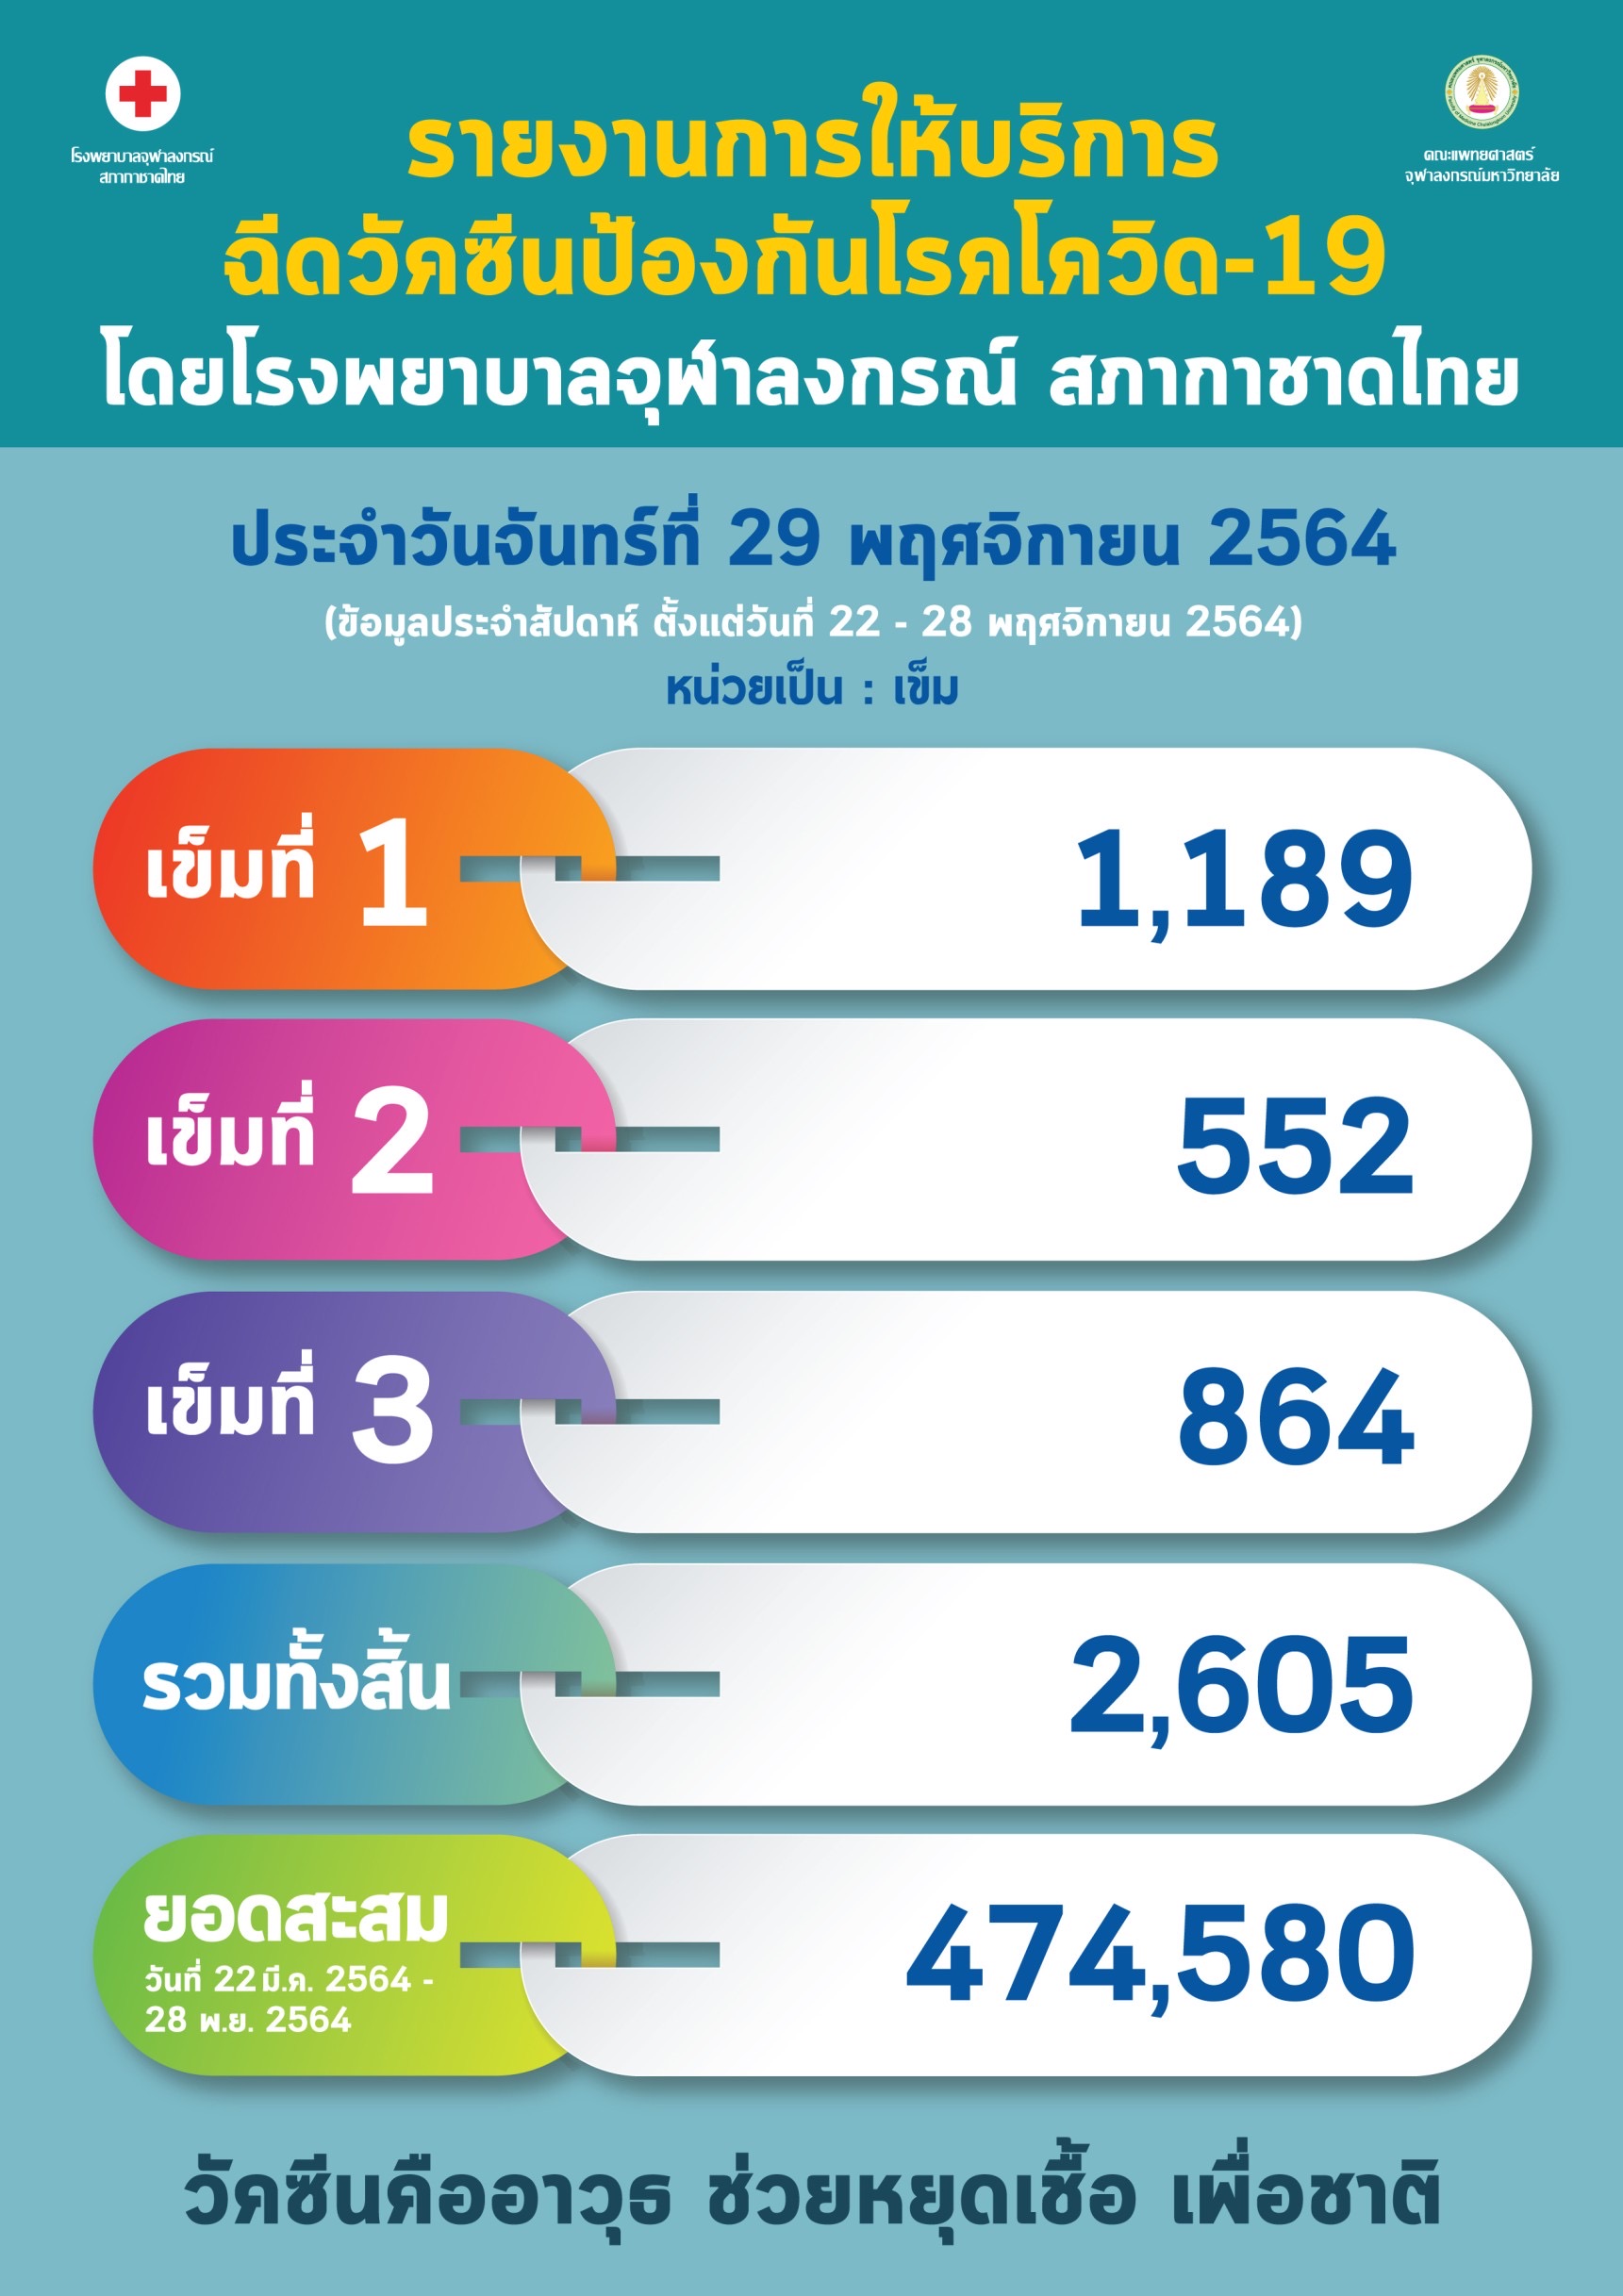 รายงานการให้บริการ ฉีดวัคซีนป้องกันโรคโควิด-19 โดยโรงพยาบาลจุฬาลงกรณ์ สภากาชาดไทย ประจำวันจันทร์ที่ 29 พฤศจิกายน 2564